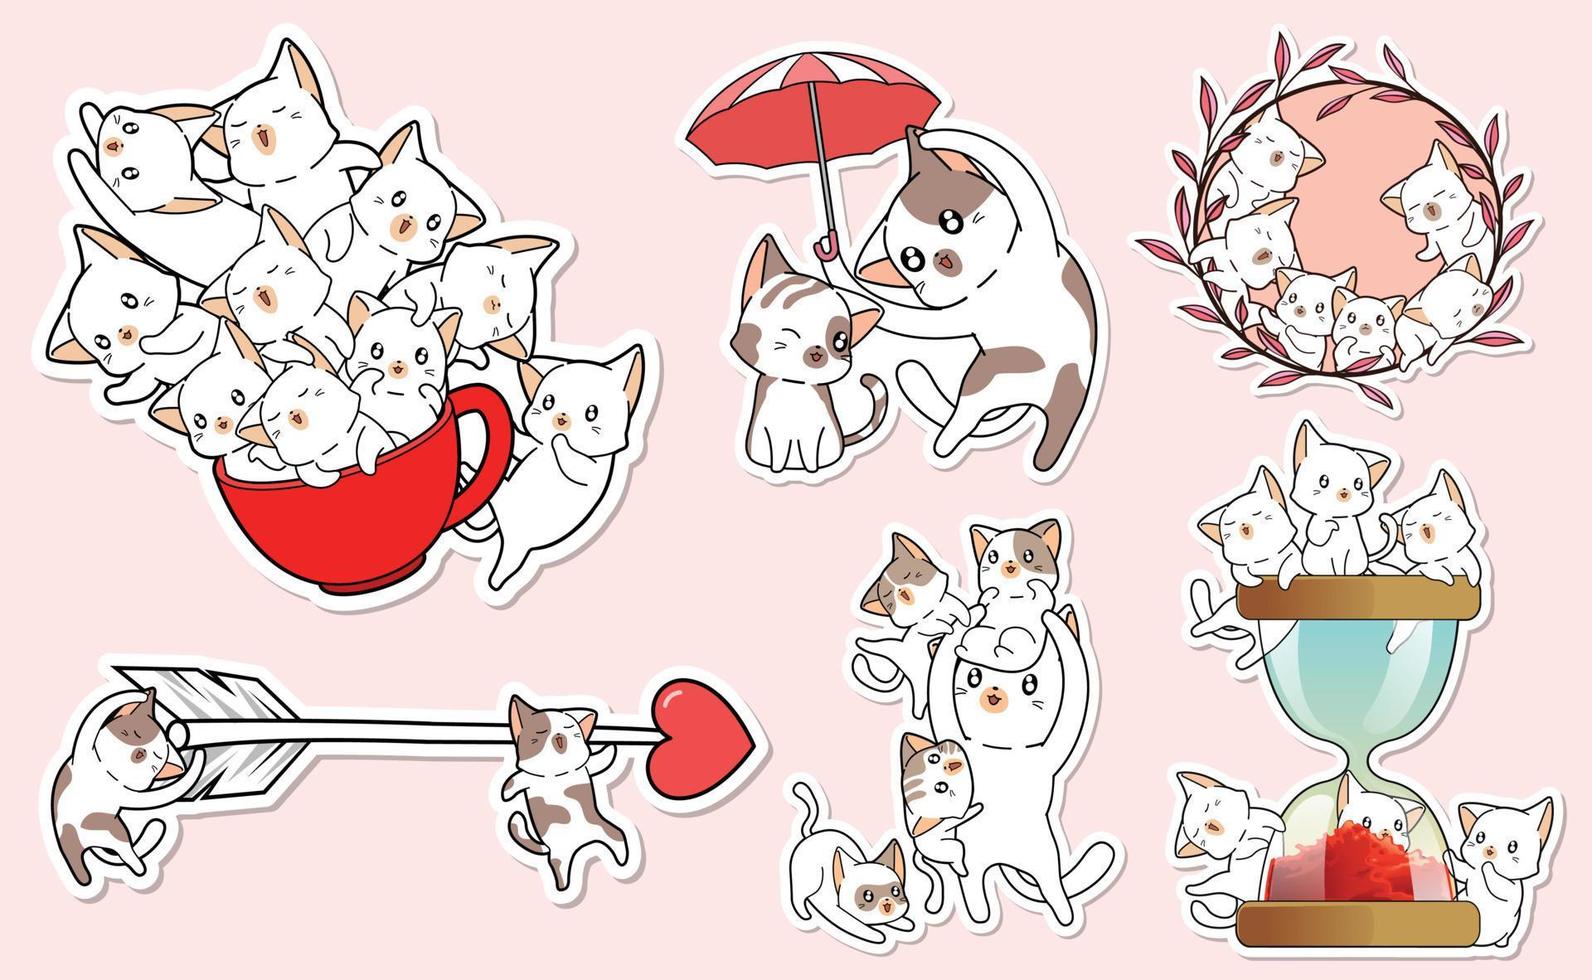 gattino gatti personaggio etichetta cartone animato collezione vettore